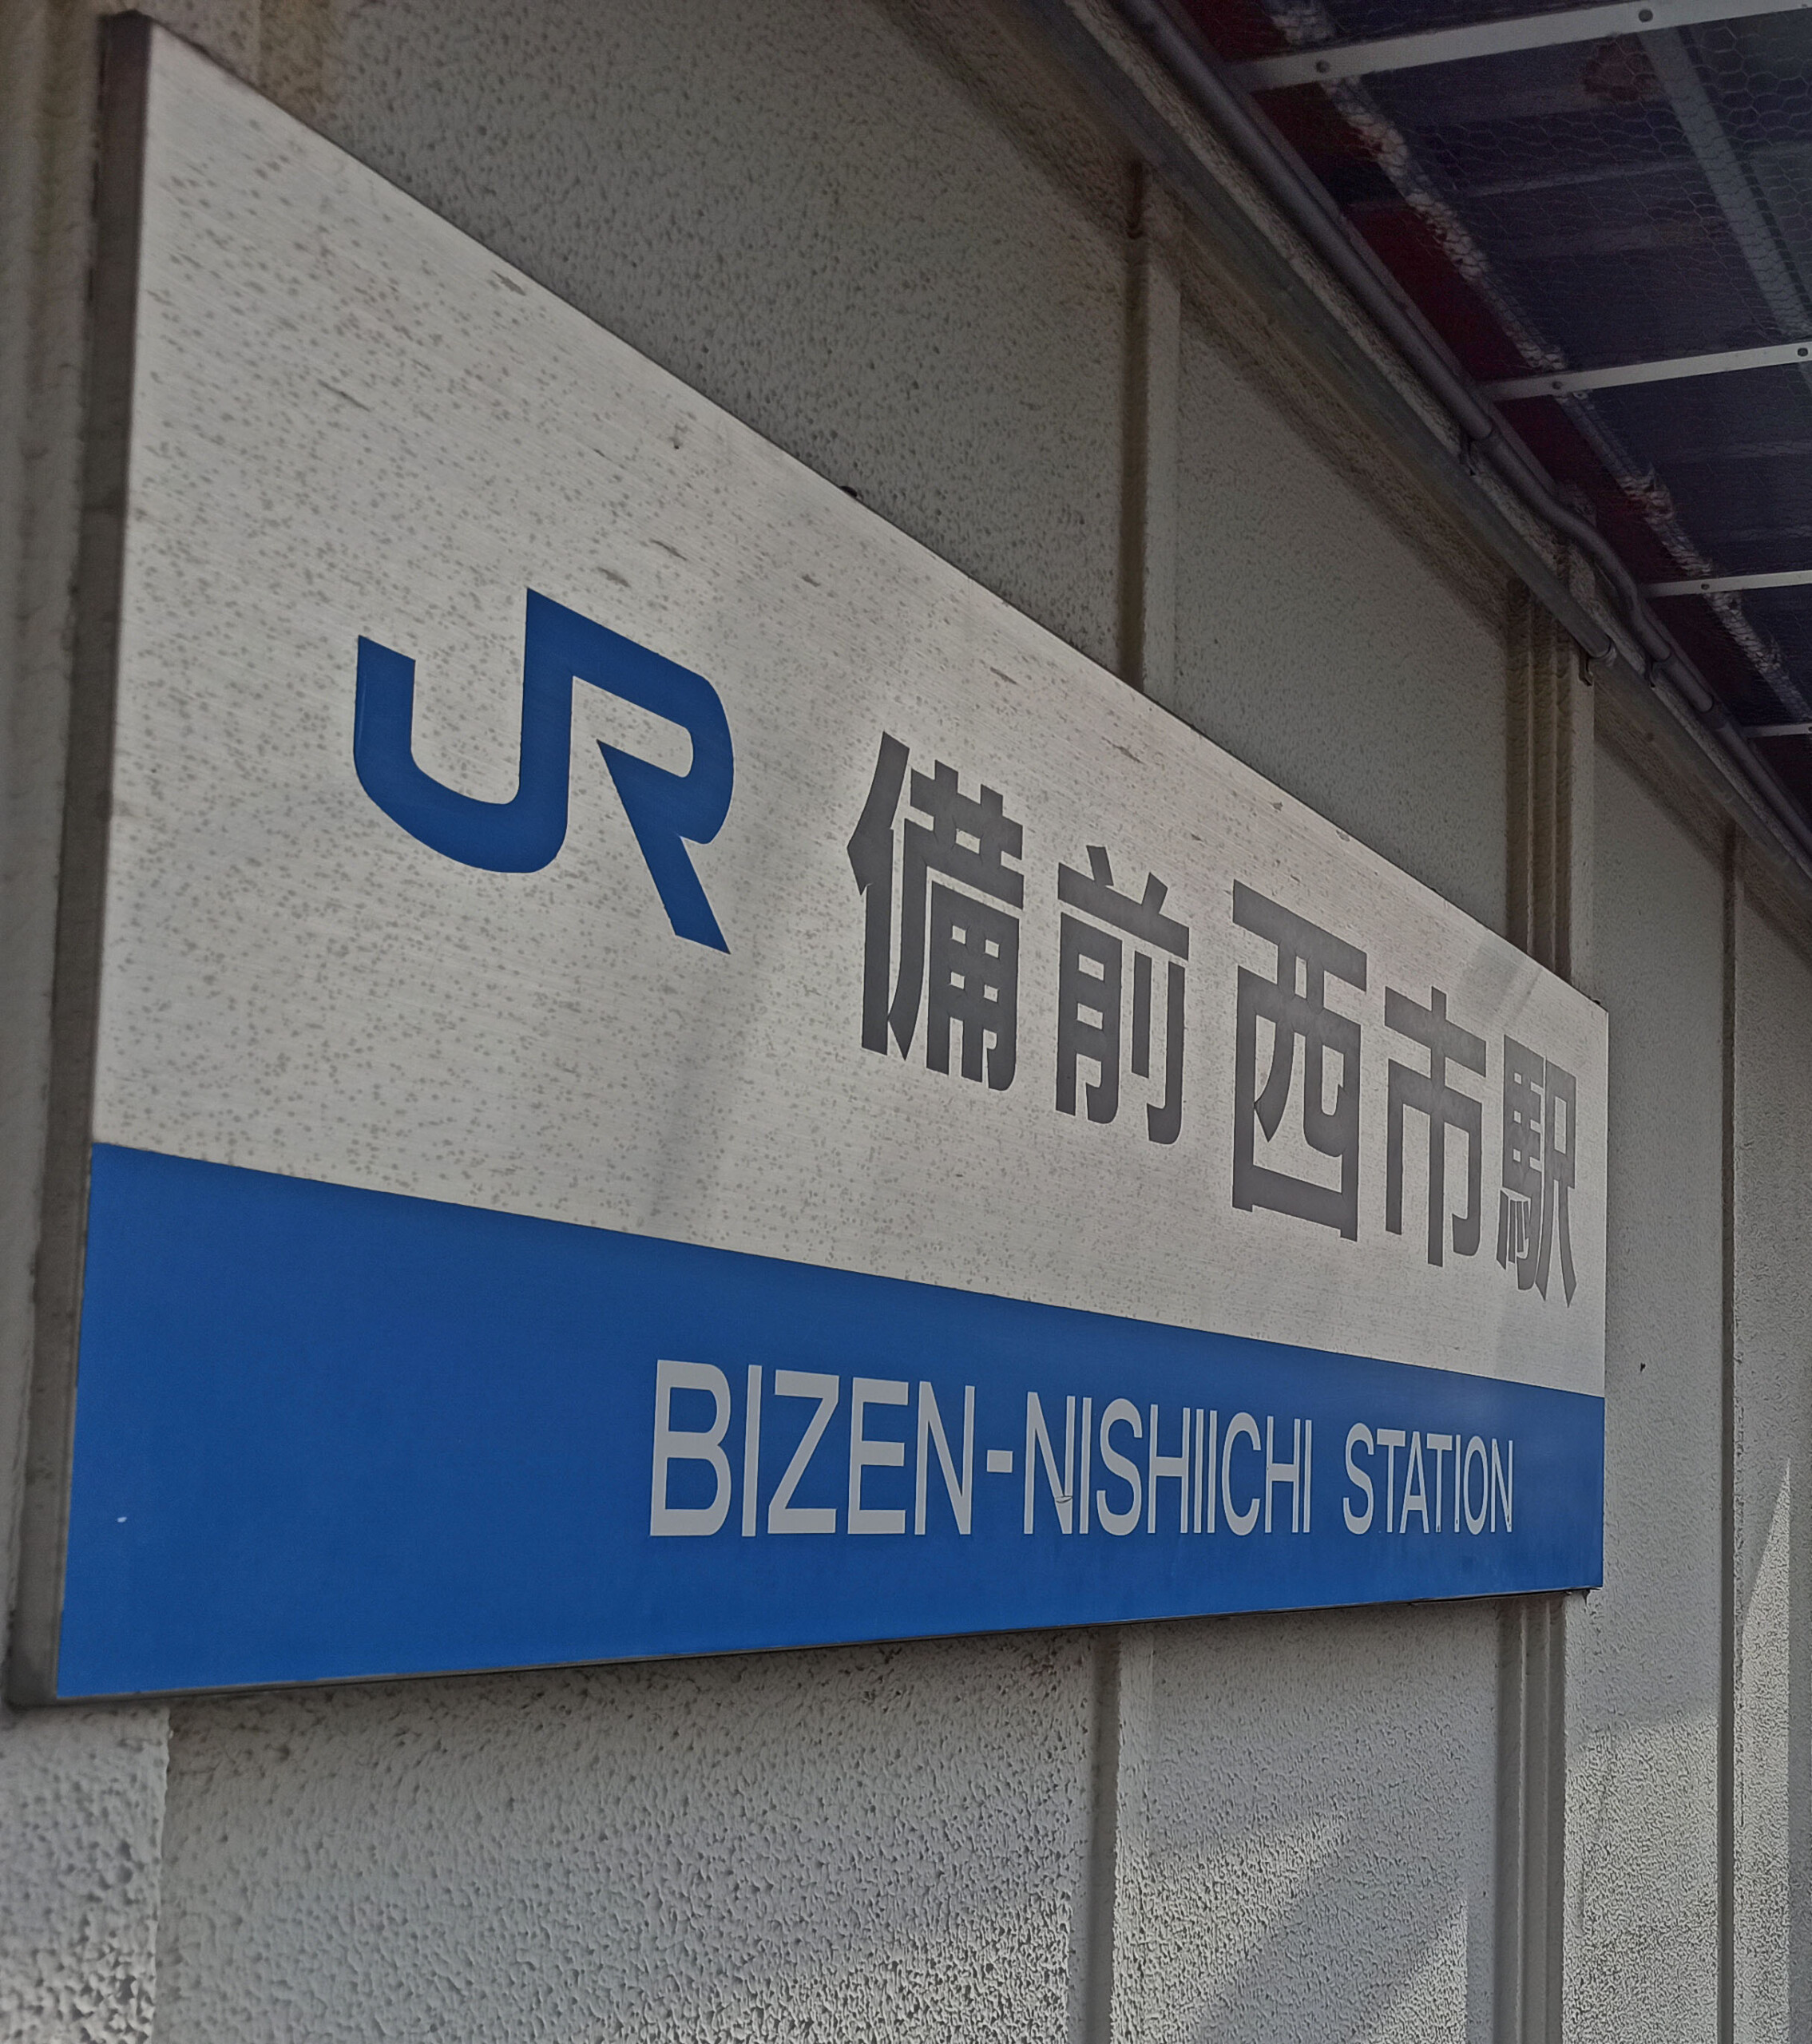 JR Bizen Nishiichi Station Sign, Japan